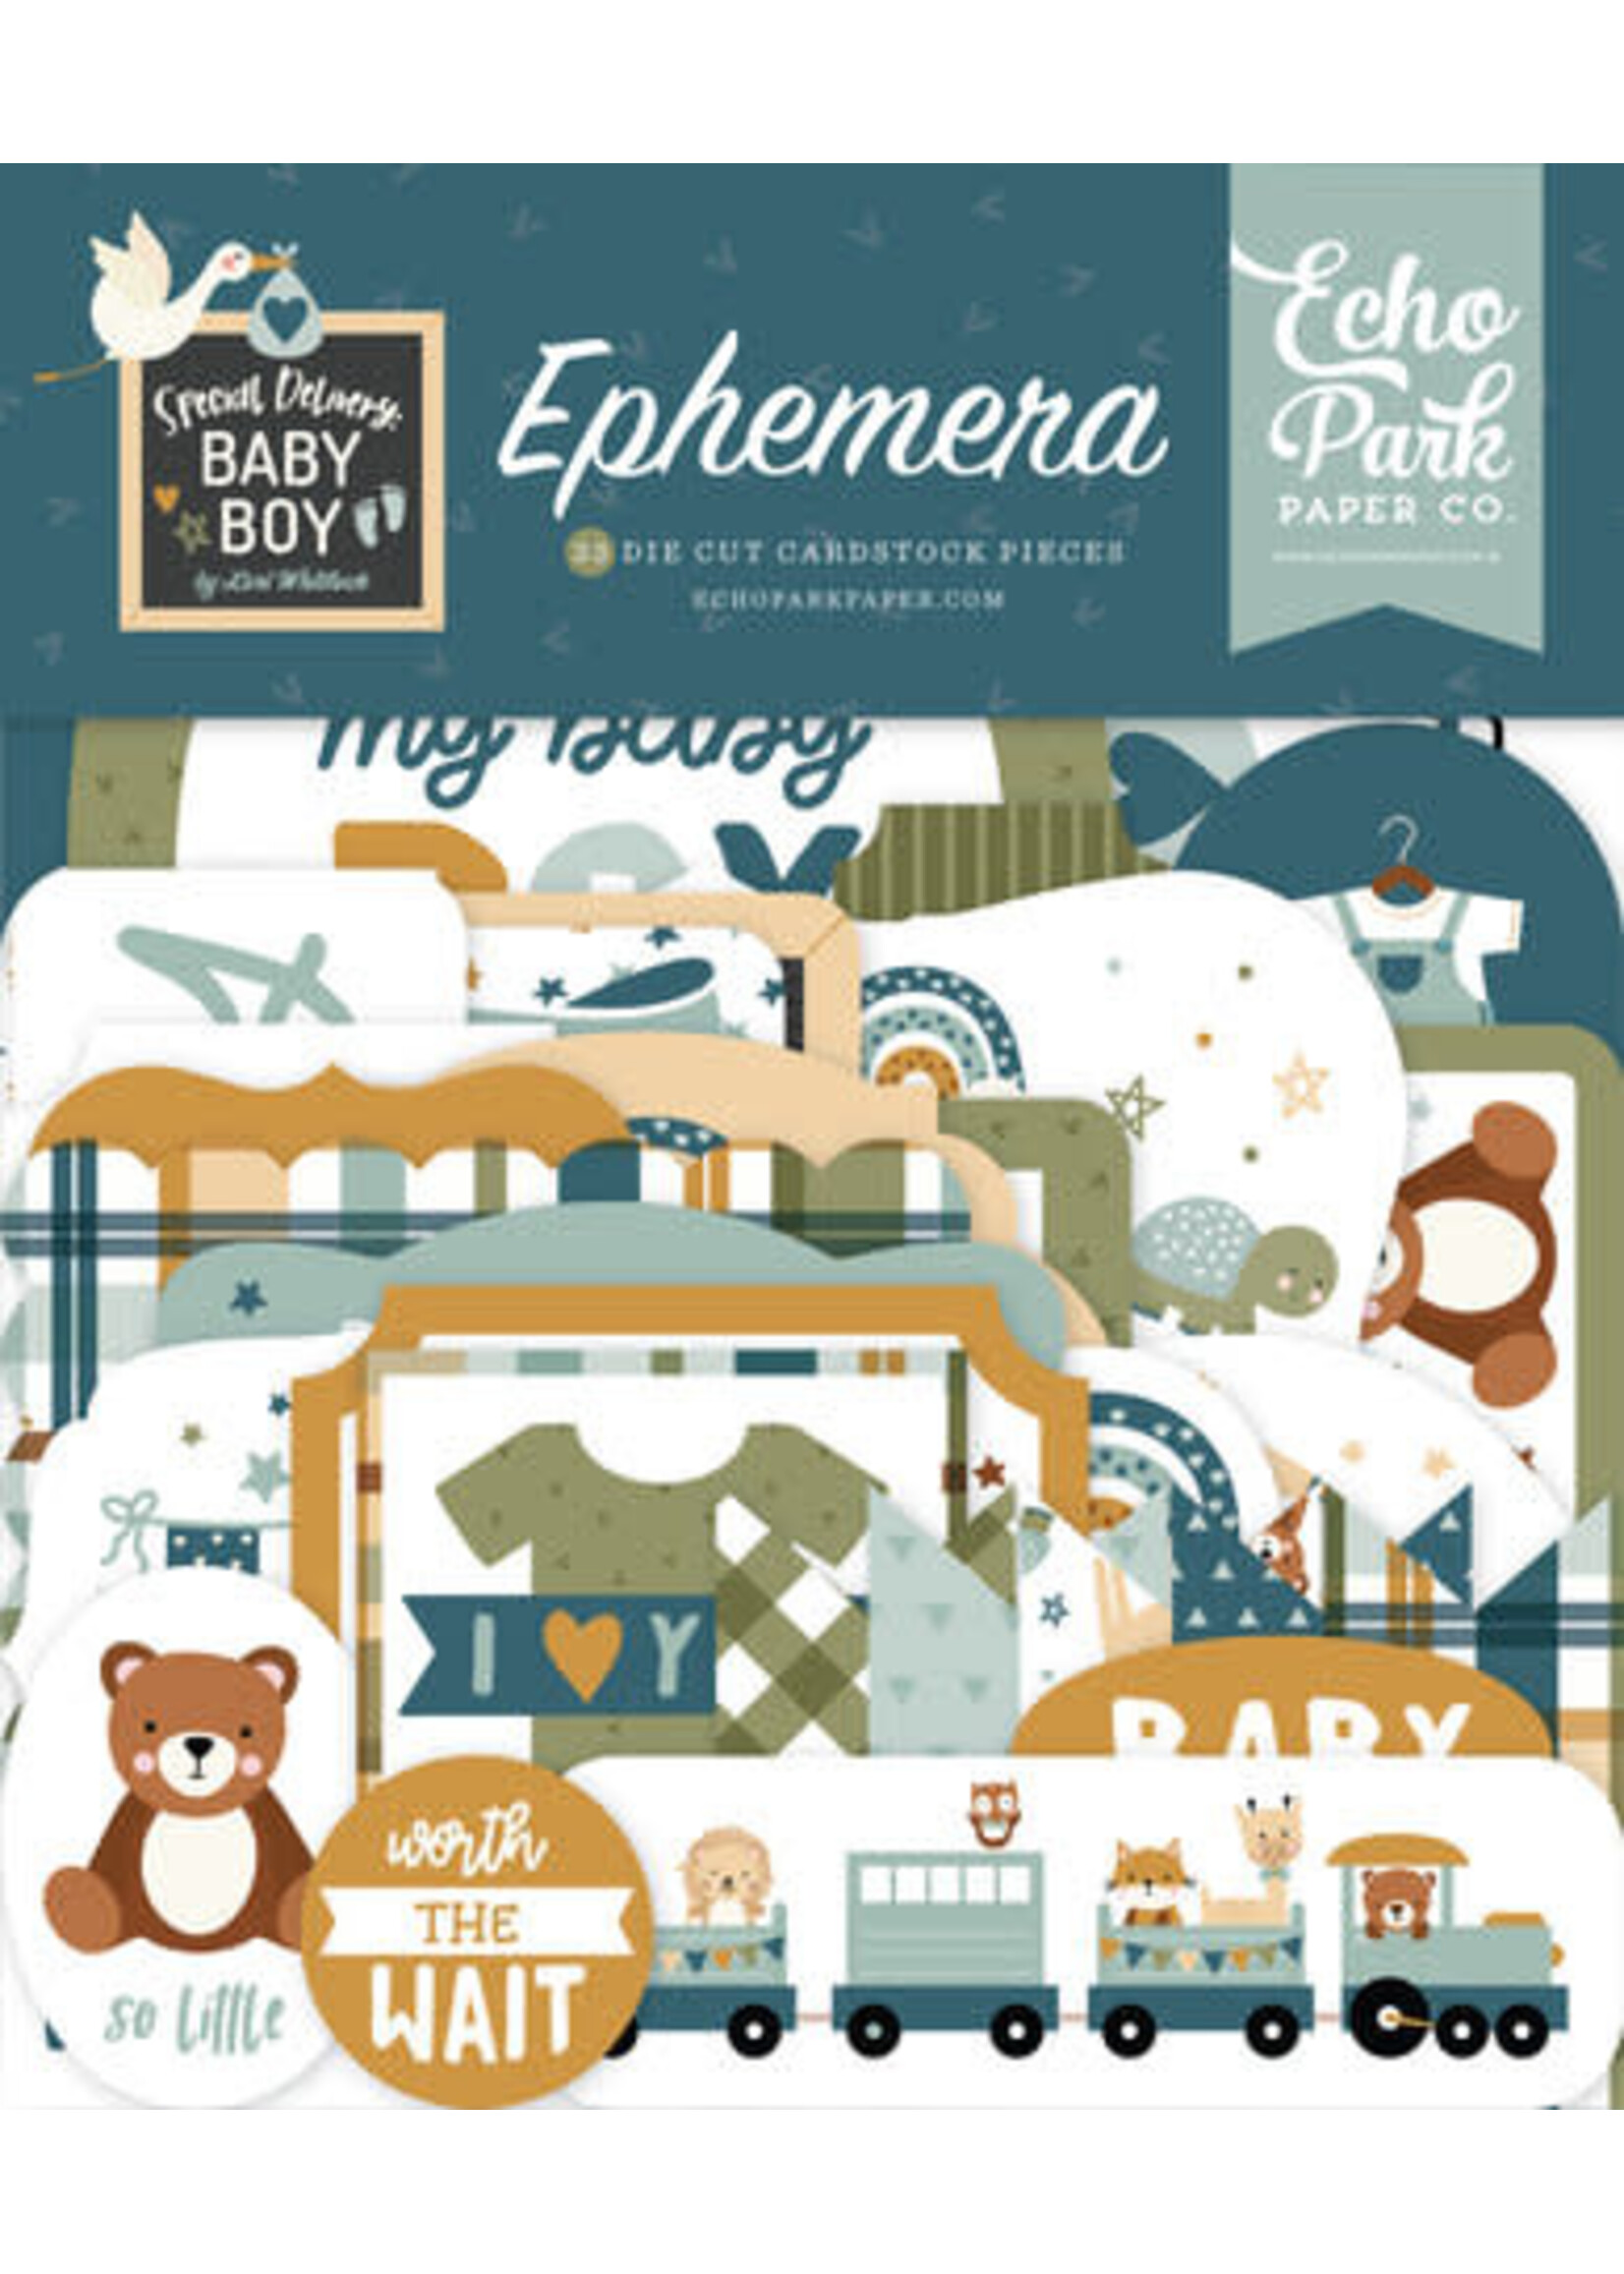 Echo Park Special Delivery Baby Boy Ephemera (SDB353024)